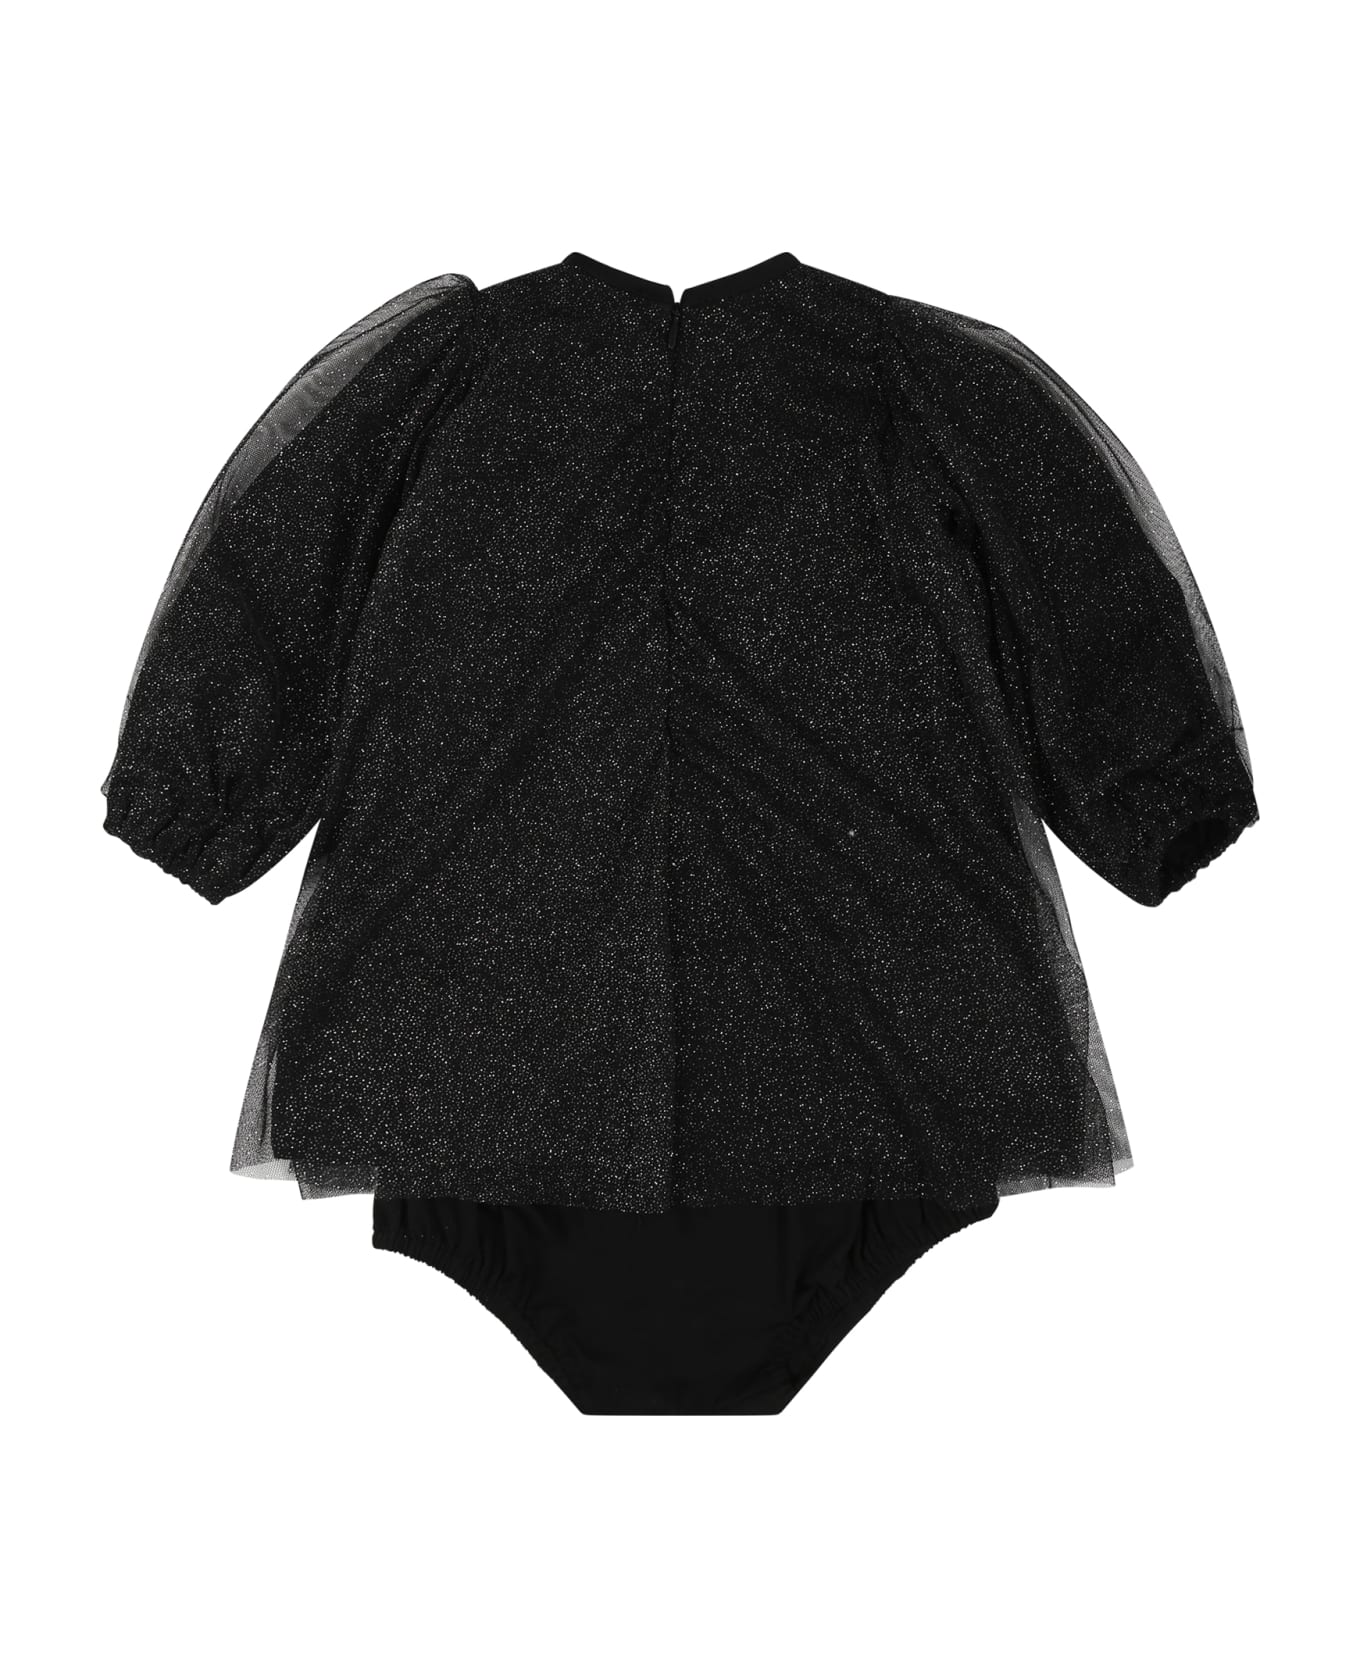 Balmain Black Dress For Baby Girl With Logo - Black ウェア